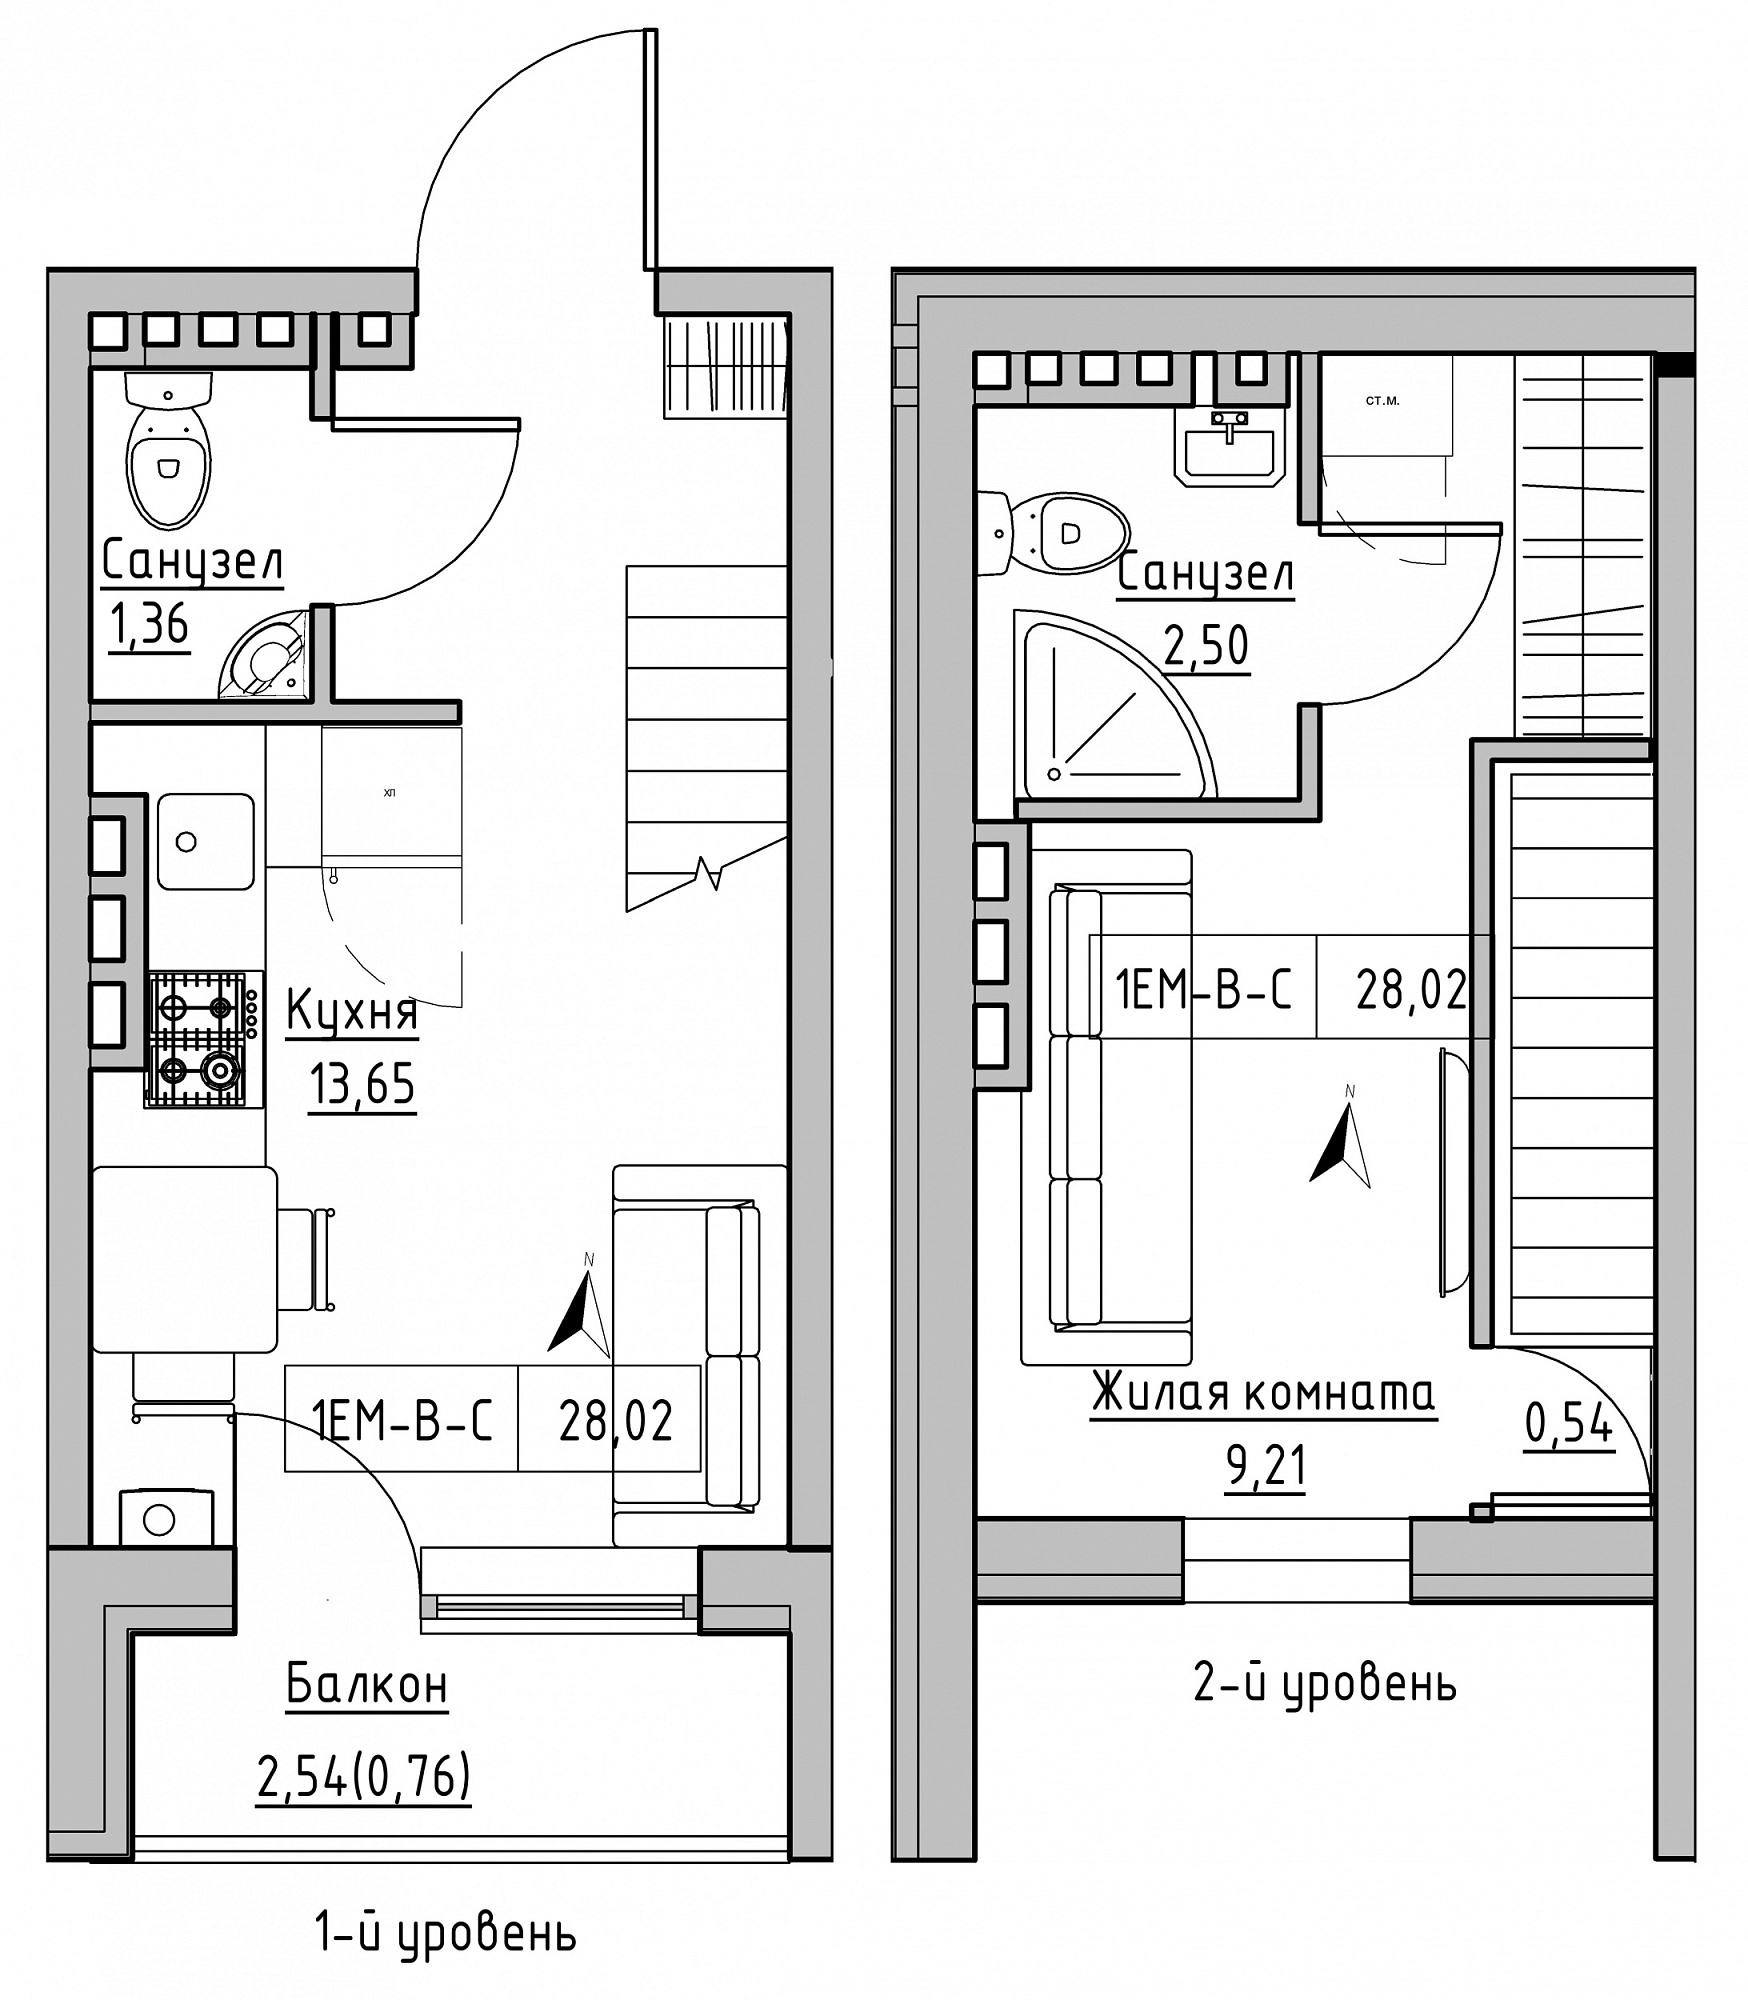 Planning 2-lvl flats area 28.02m2, KS-024-05/0006.